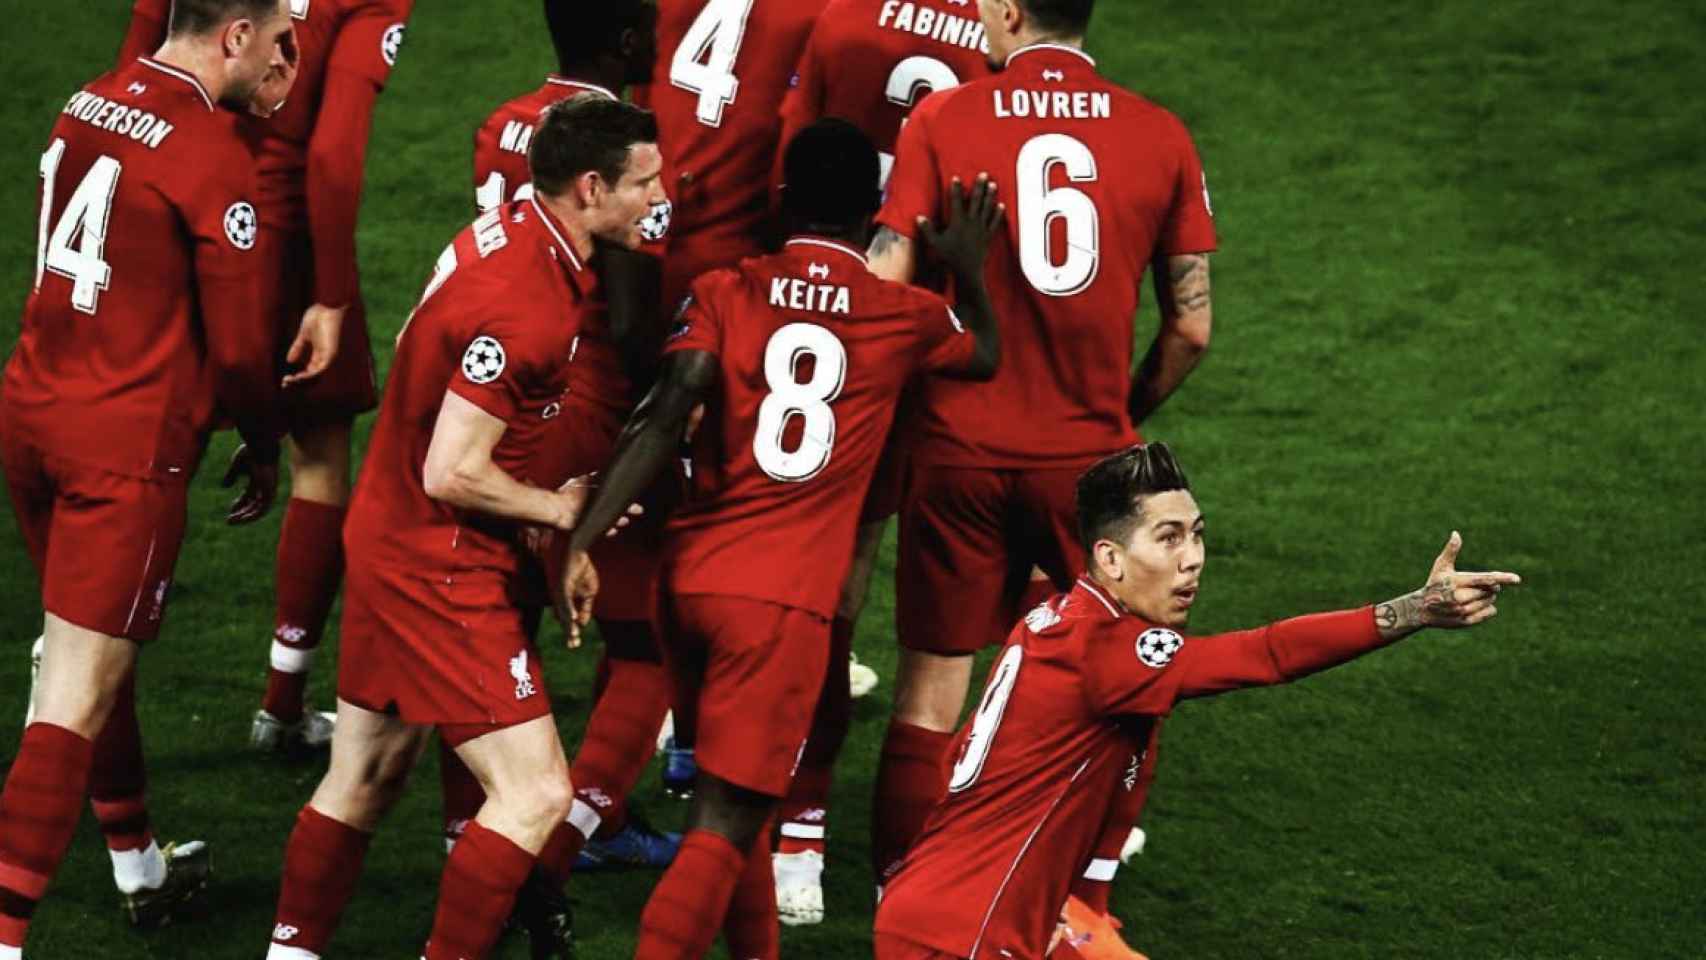 Una foto de los jugadores del Liverpool celebrando del gol de Firminho ante el Porto / Instagram